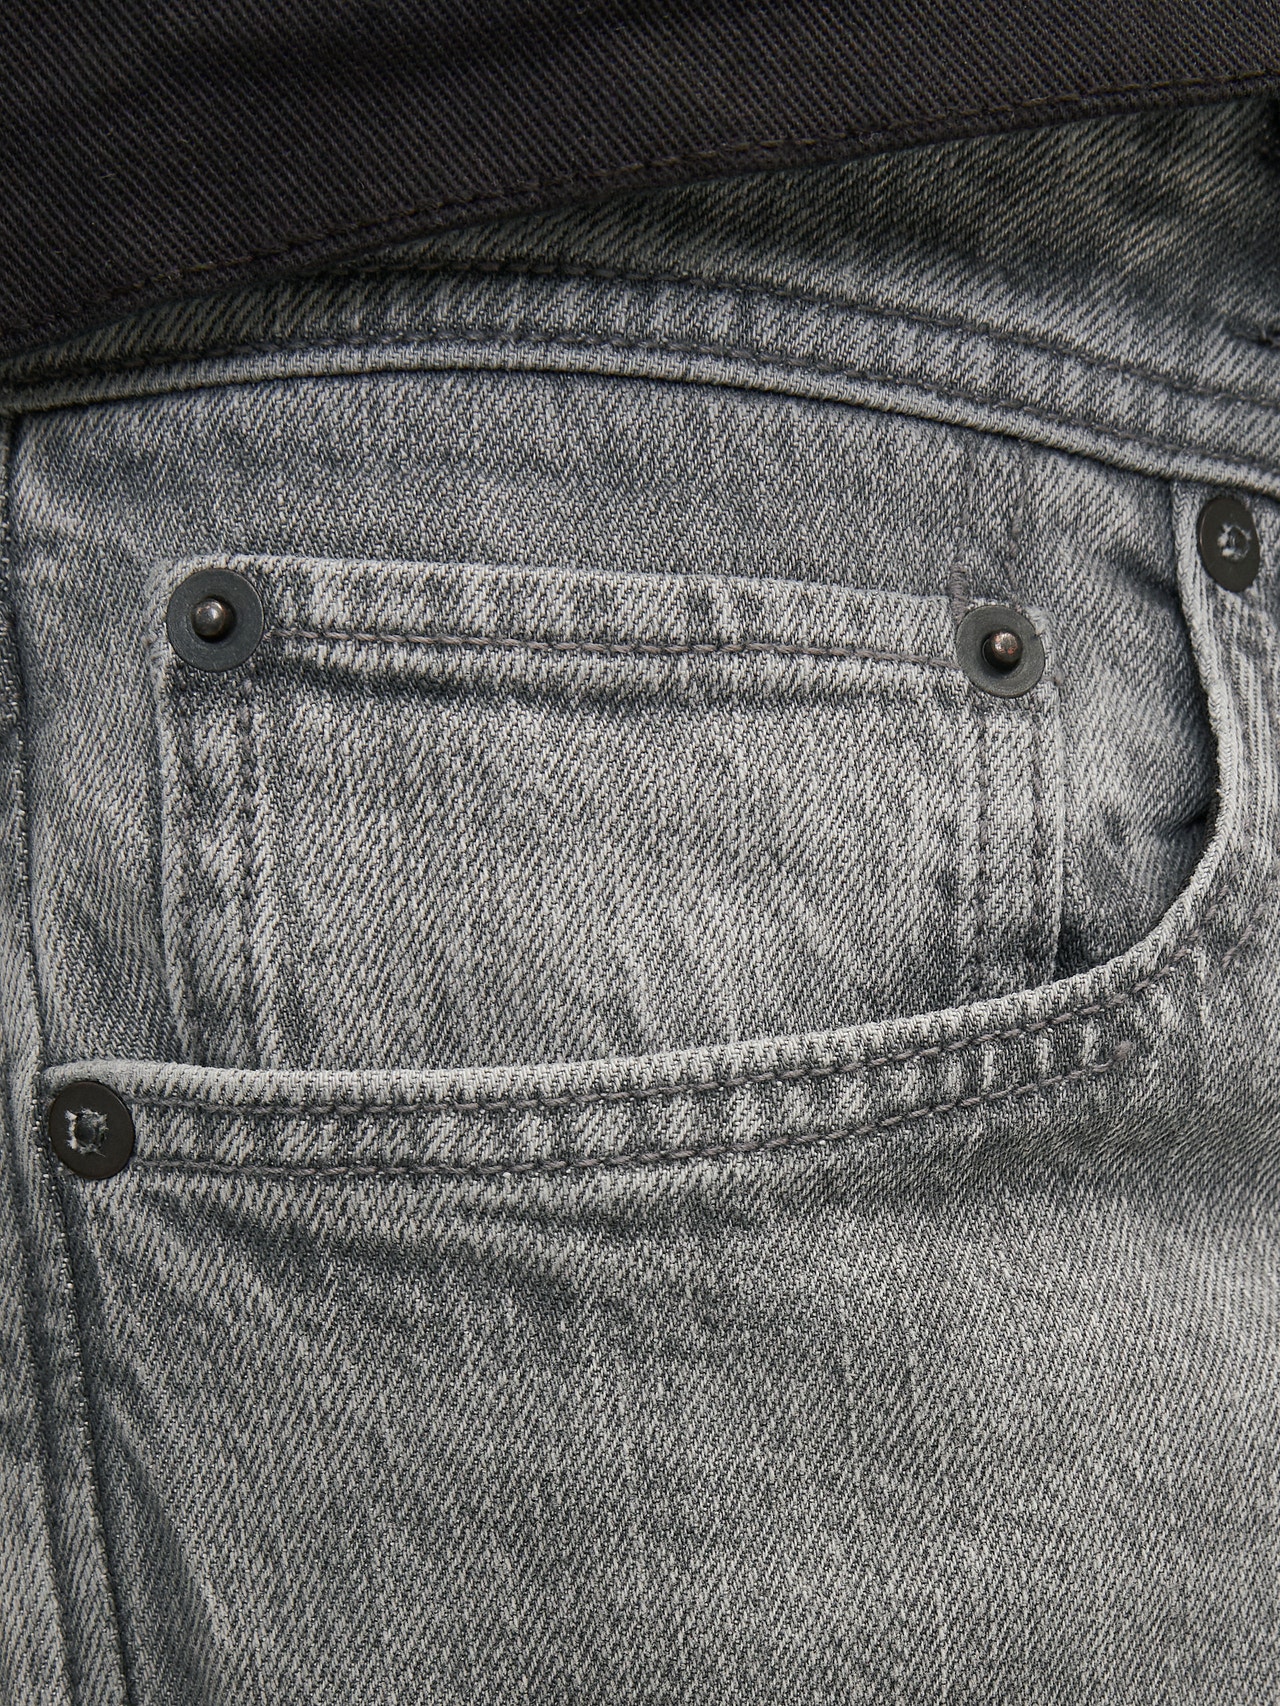 Jack & Jones JJIMIKE JJORIGINAL SBD 514 Tapered fit jeans -Grey Denim - 12258576